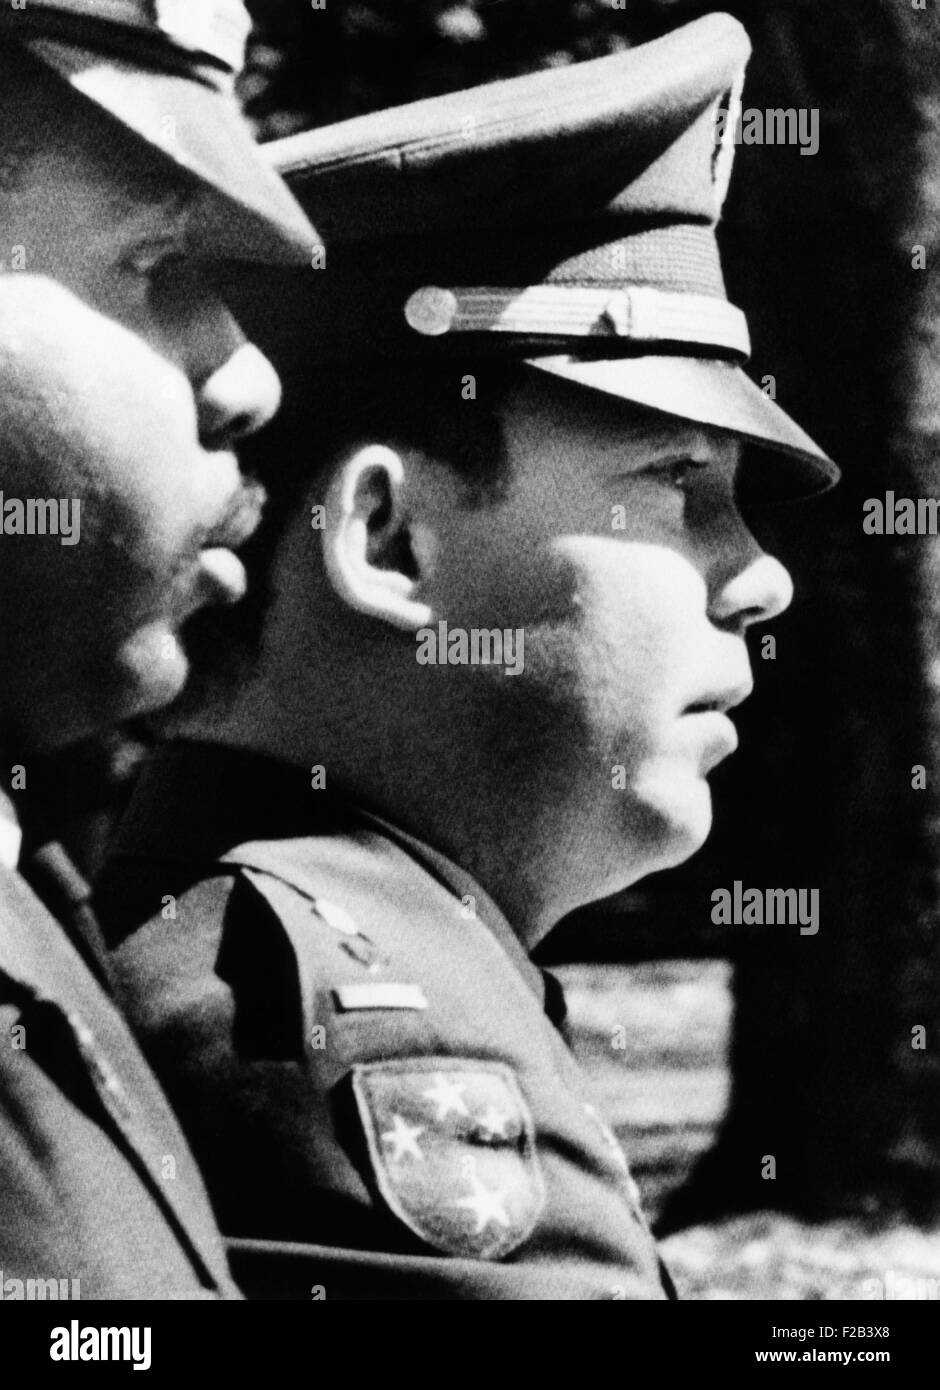 Le lieutenant William Calley L., Jr. escorté à la Fort Benning stockade le 31 mars 1971. Il avait juste entendu le jury prononcer une vie Banque D'Images